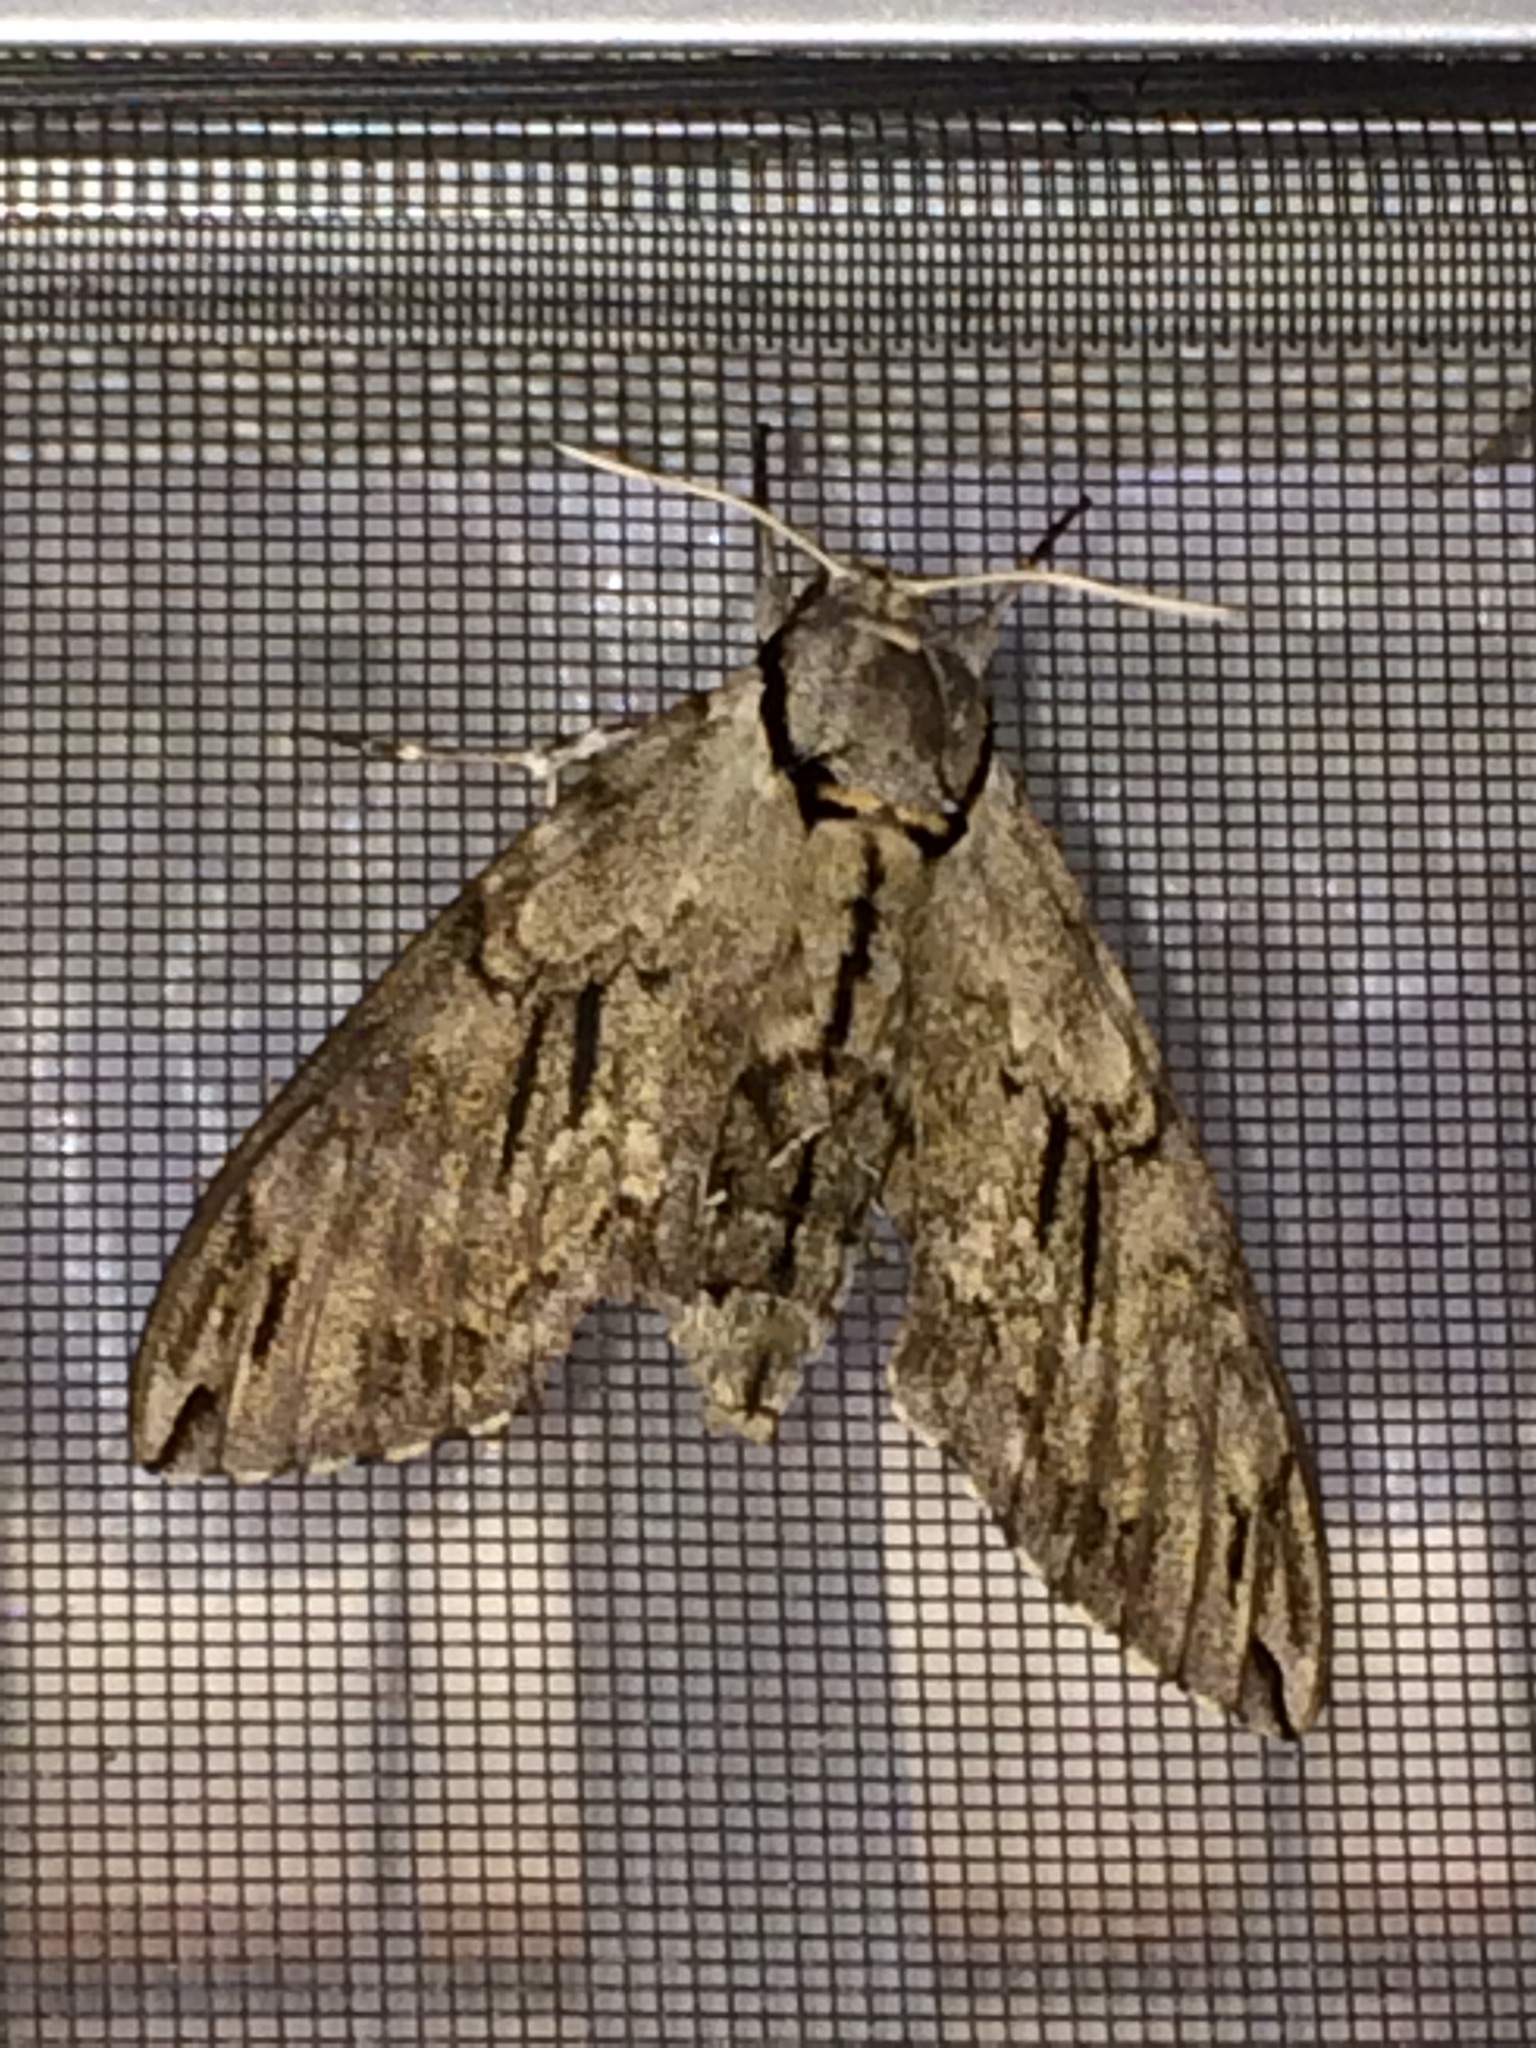 Hawk-moths – Imaging Storm